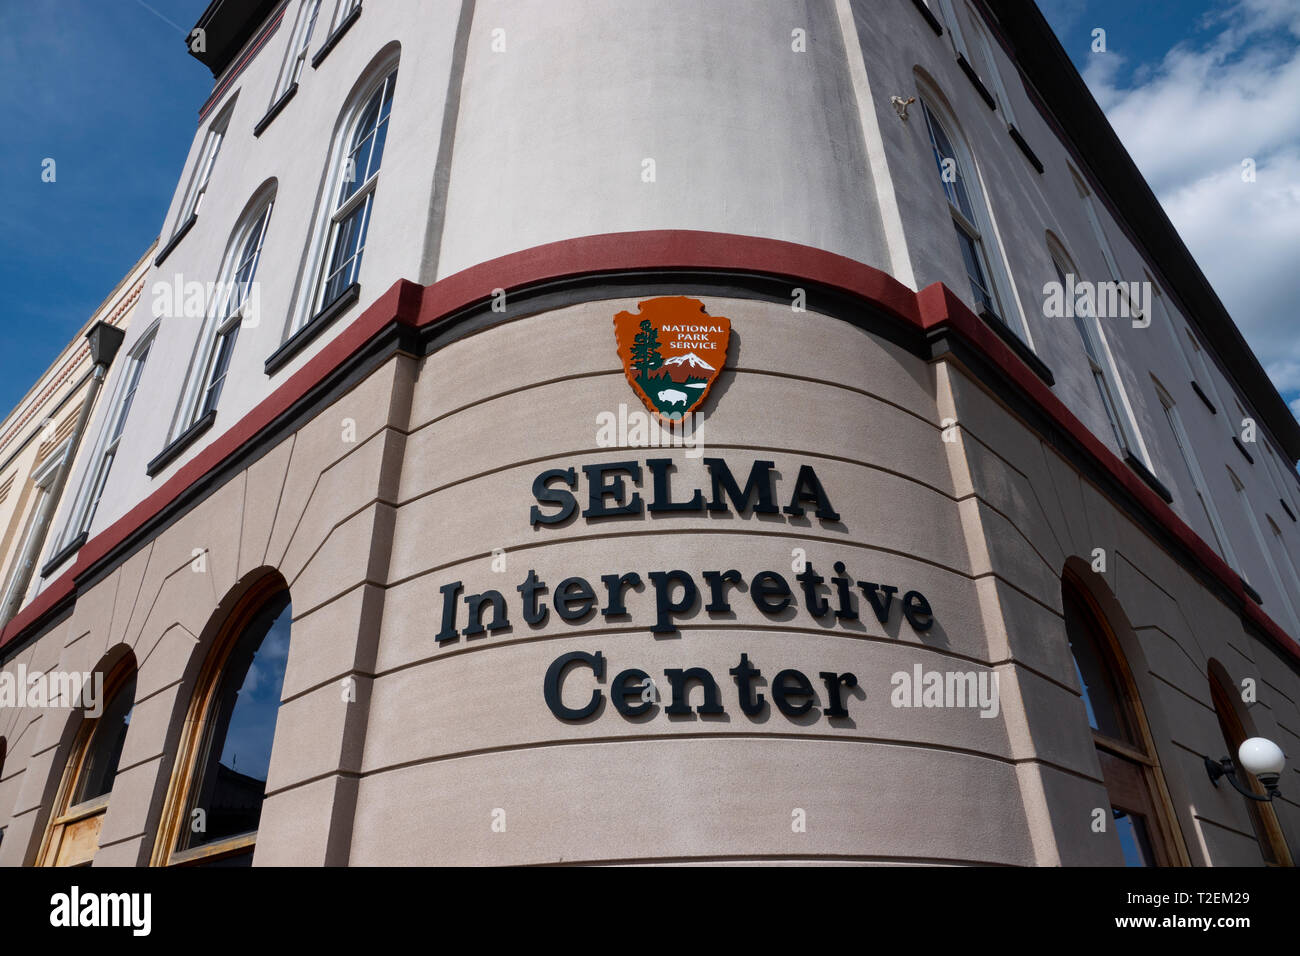 Ee.Uu. derechos civiles Selma Alabama Interpretive Centre National Park Service Foto de stock